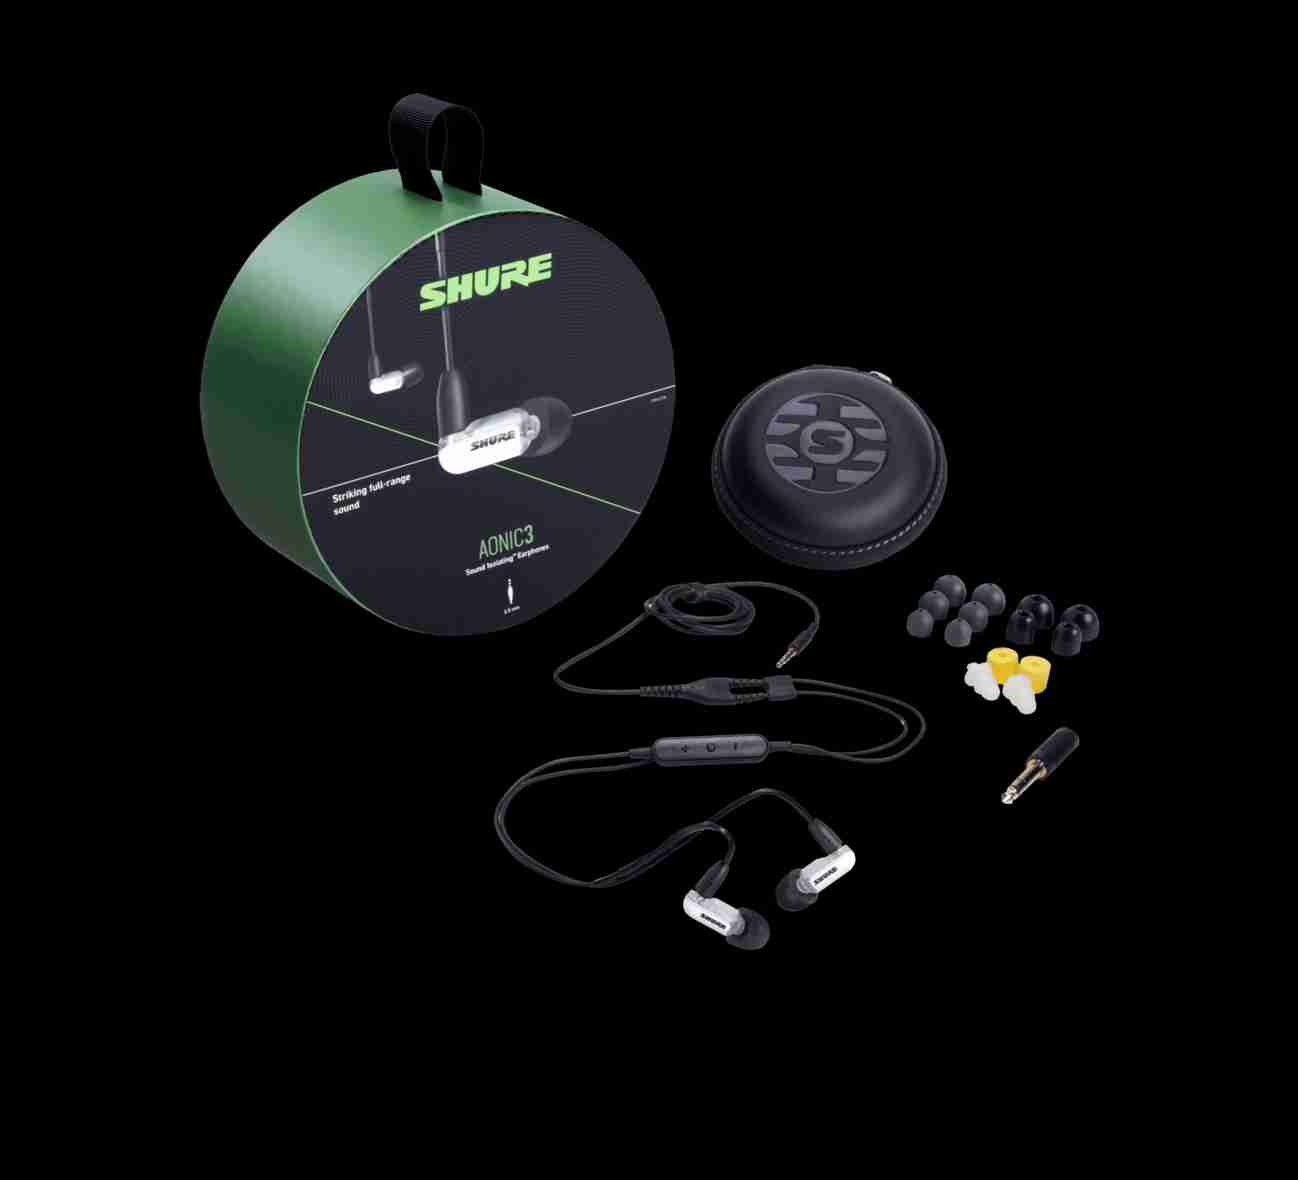 +首都音響+ 美國品牌 SHURE Aonic 3耳道式耳機 公司貨 來店可試聽